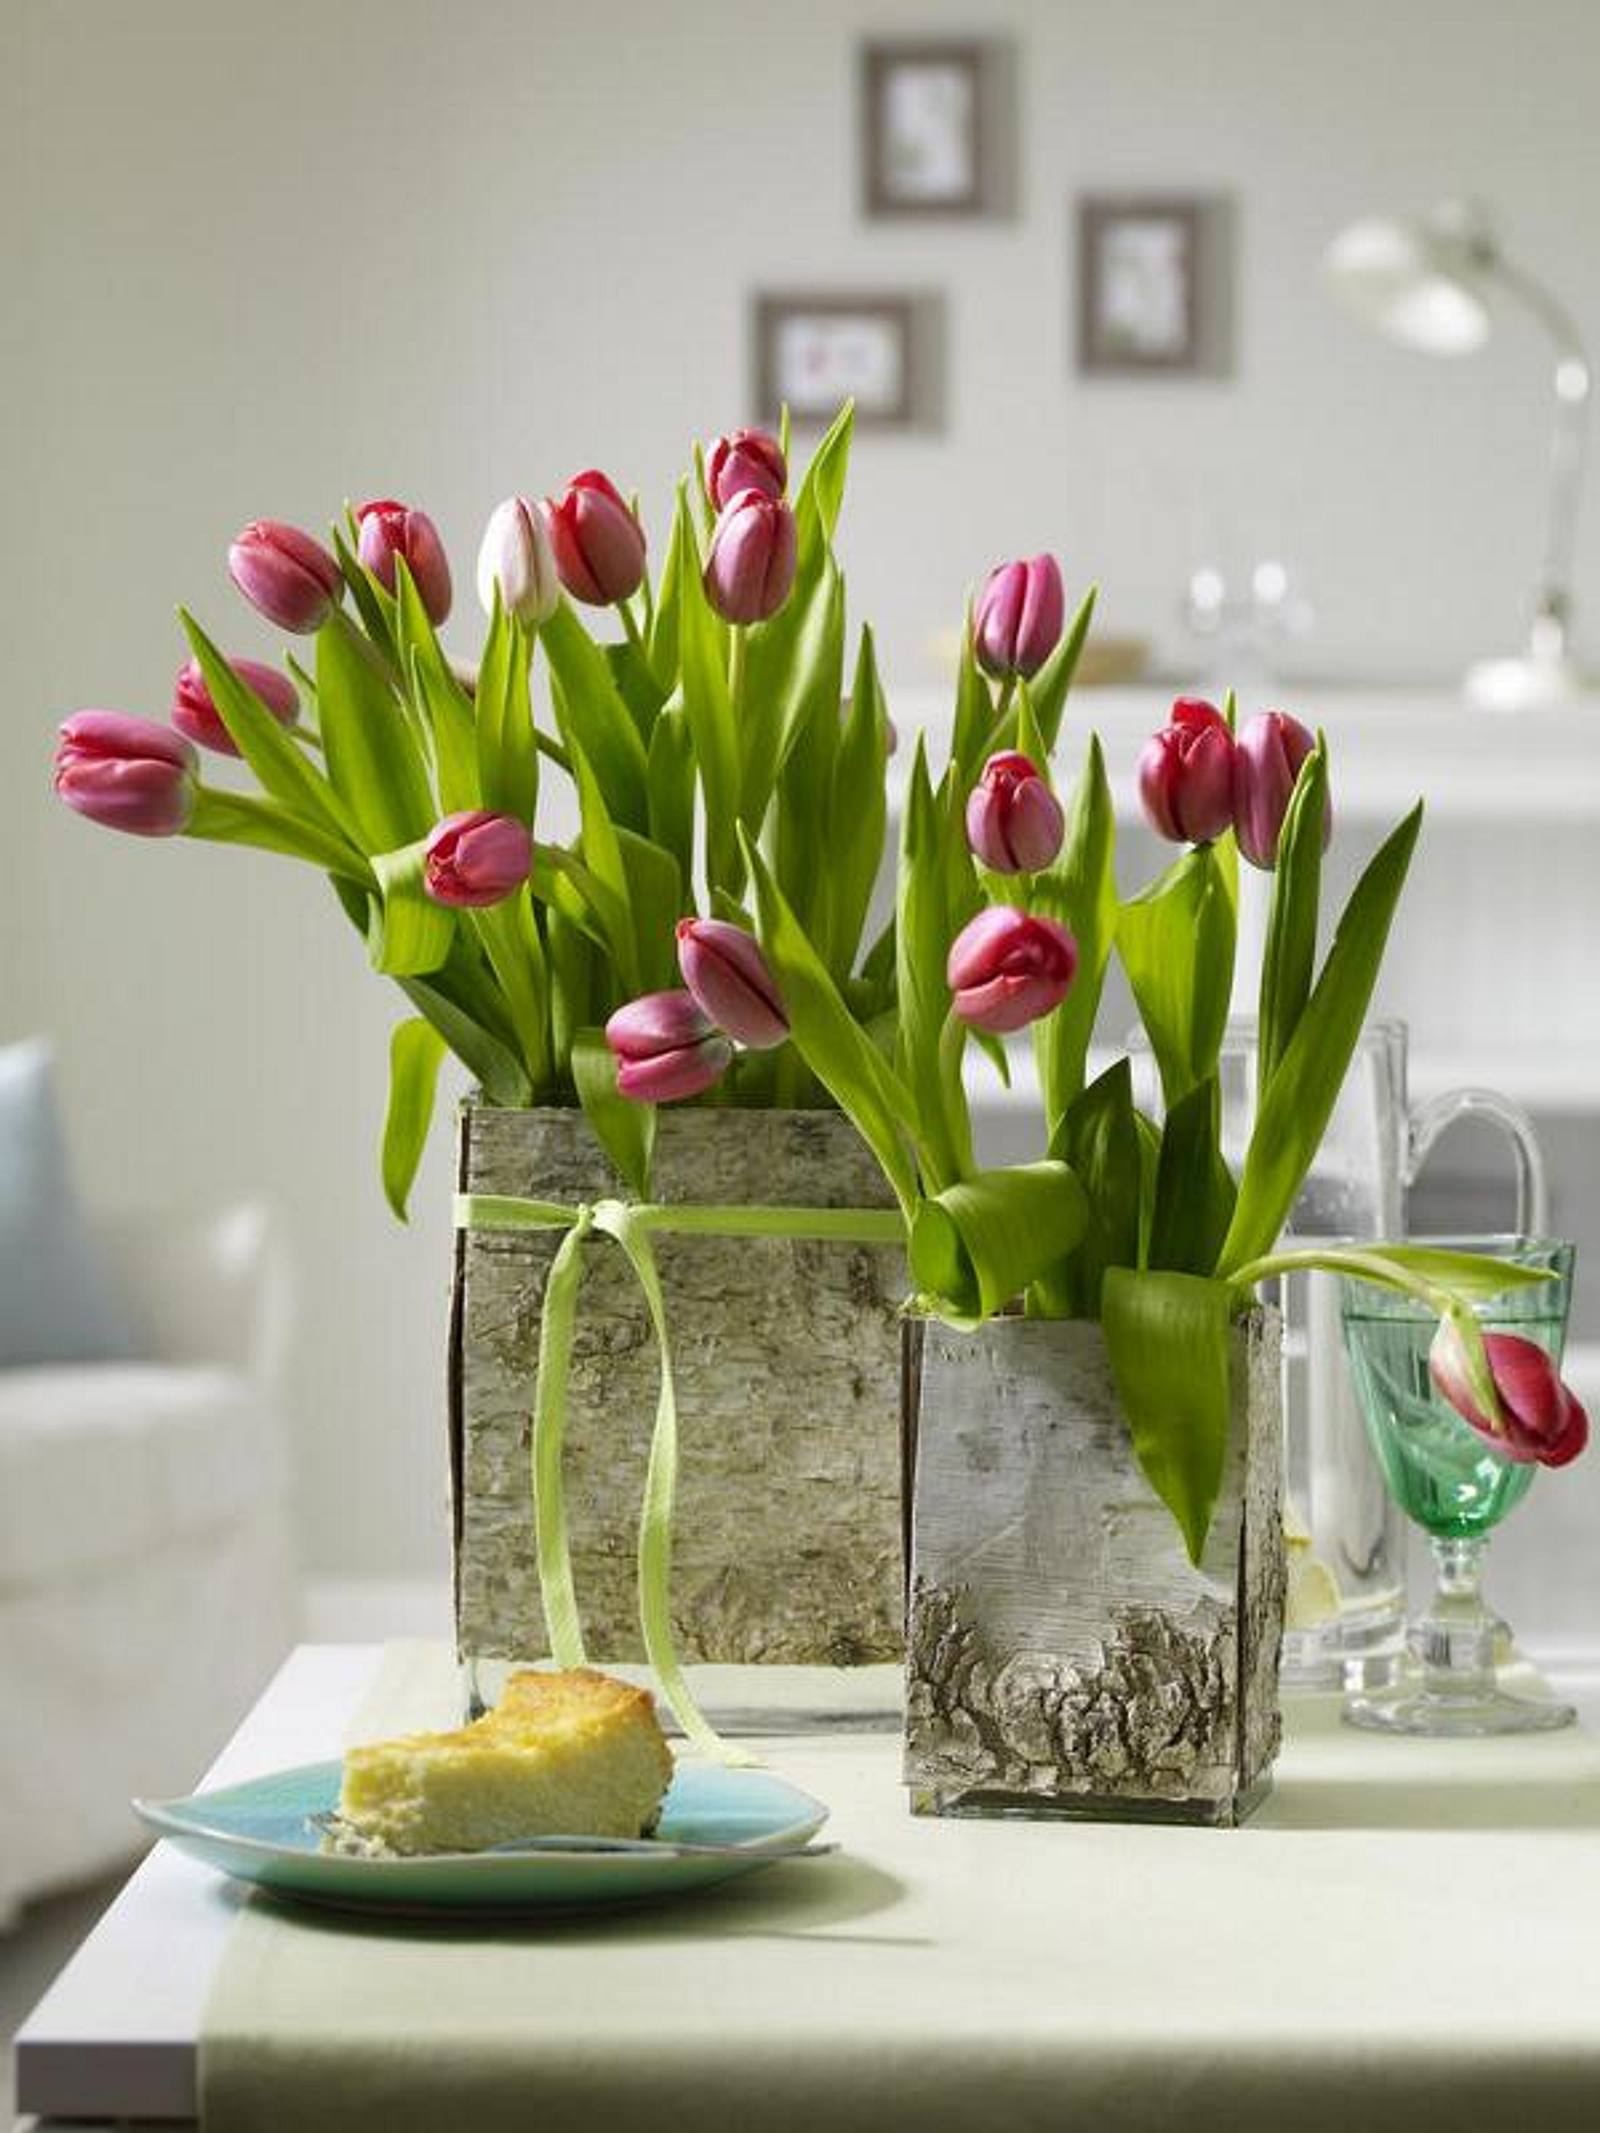 Фото тюльпаны в вазе на столе. Букет тюльпанов в вазе. Ваза с тюльпанами. Весенние композиции в интерьере. Композиция с тюльпанами в вазе.